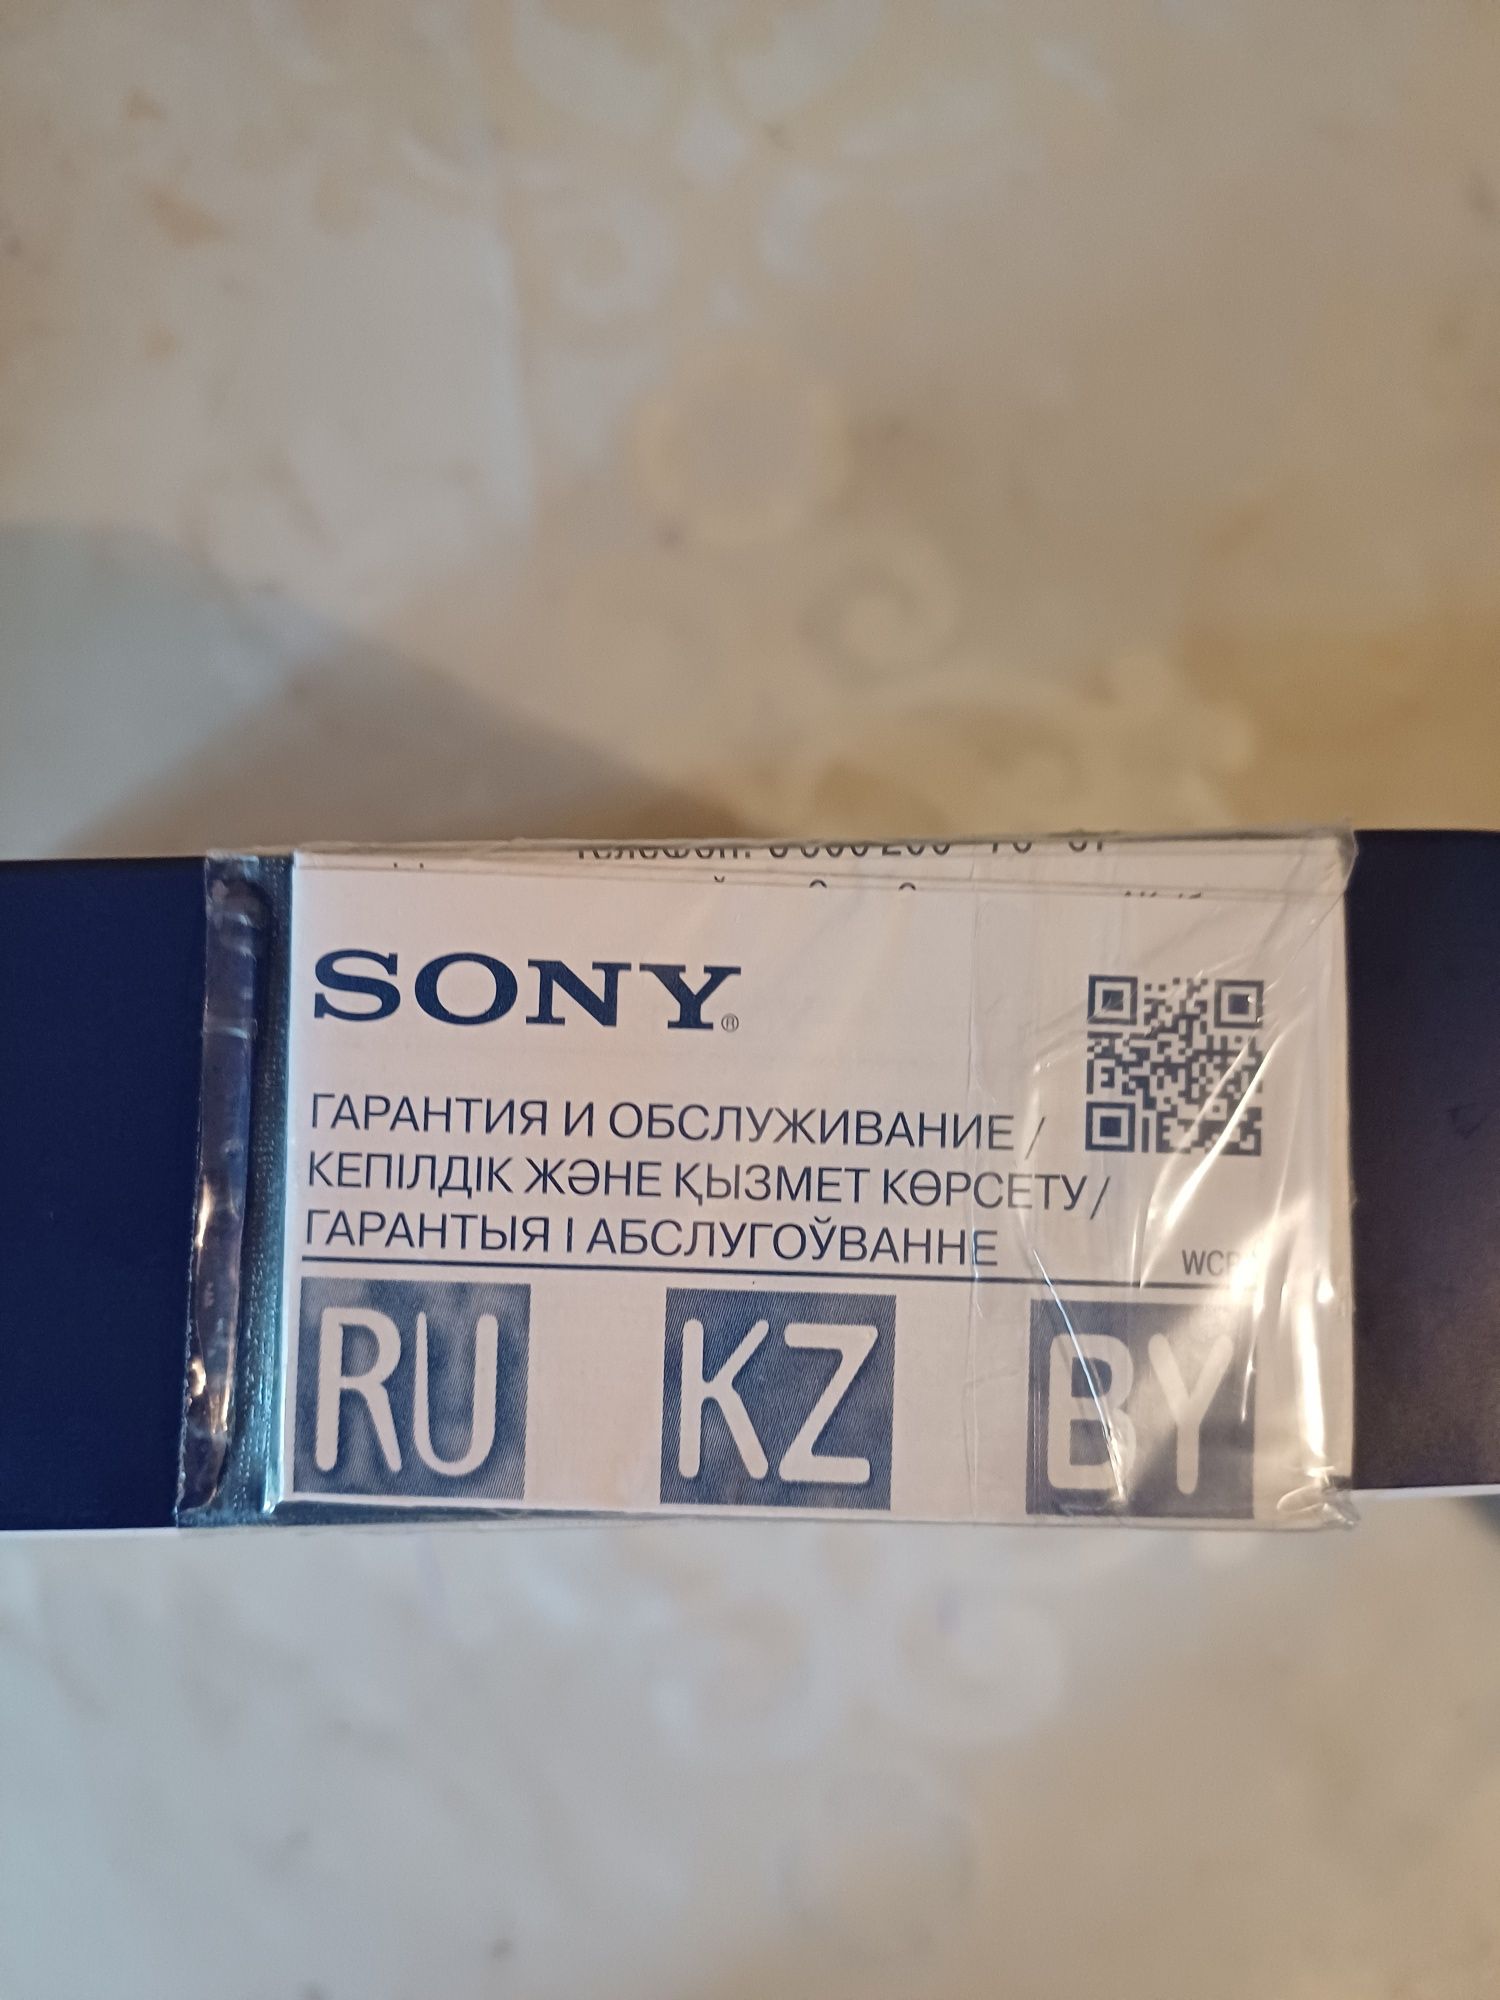 Беспроводные наушники Sony WH-CH510